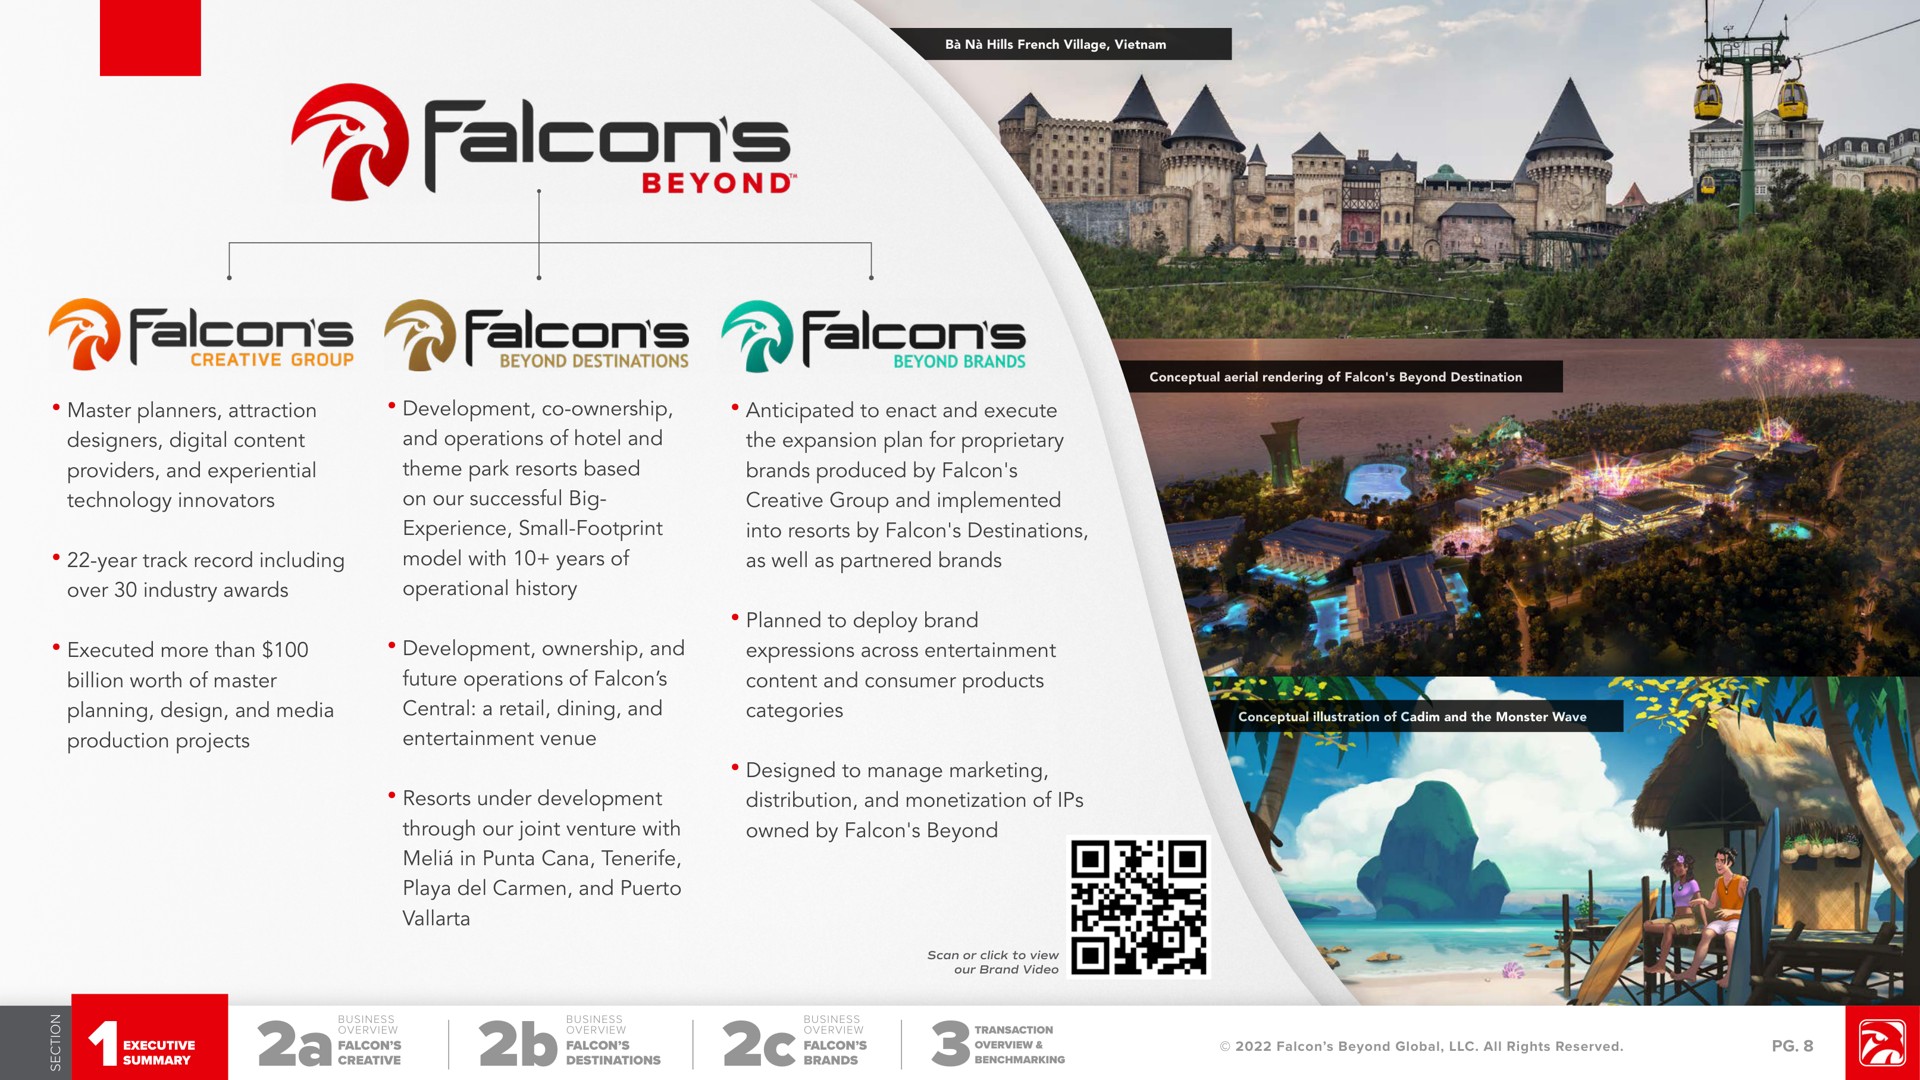 falcons falcons falcons | Falcon's Beyond